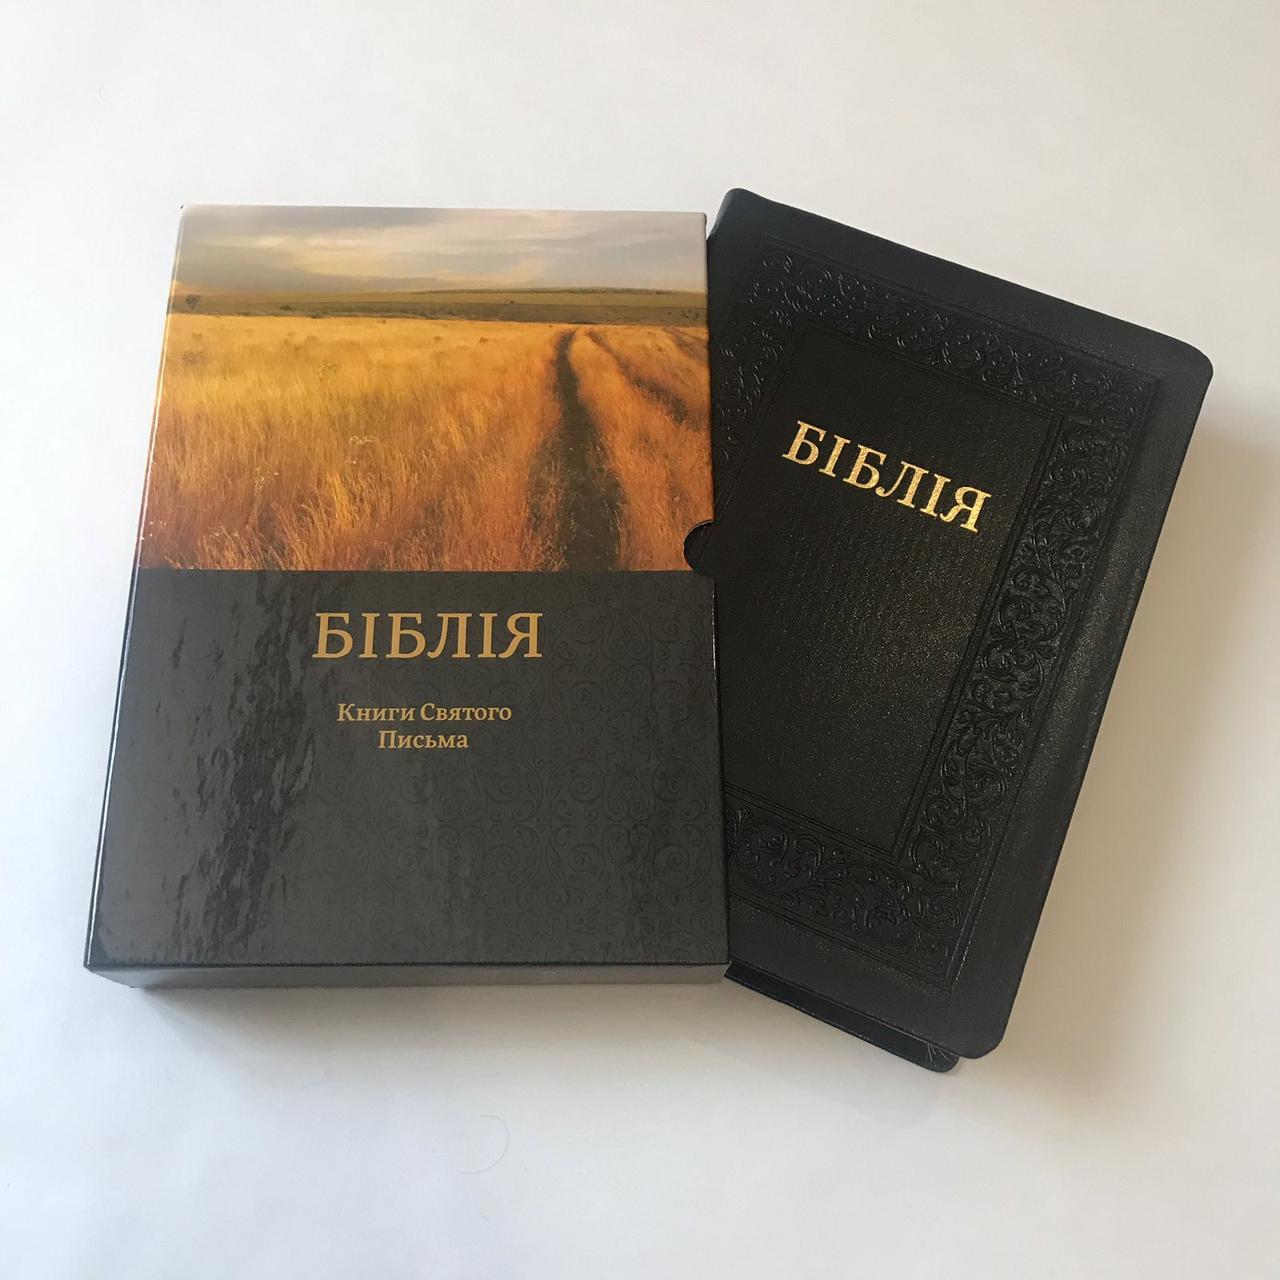 Шкіряна Біблія українською мовою великого формату 17*24 см у подарунковому футлярі з пошуковими індексами